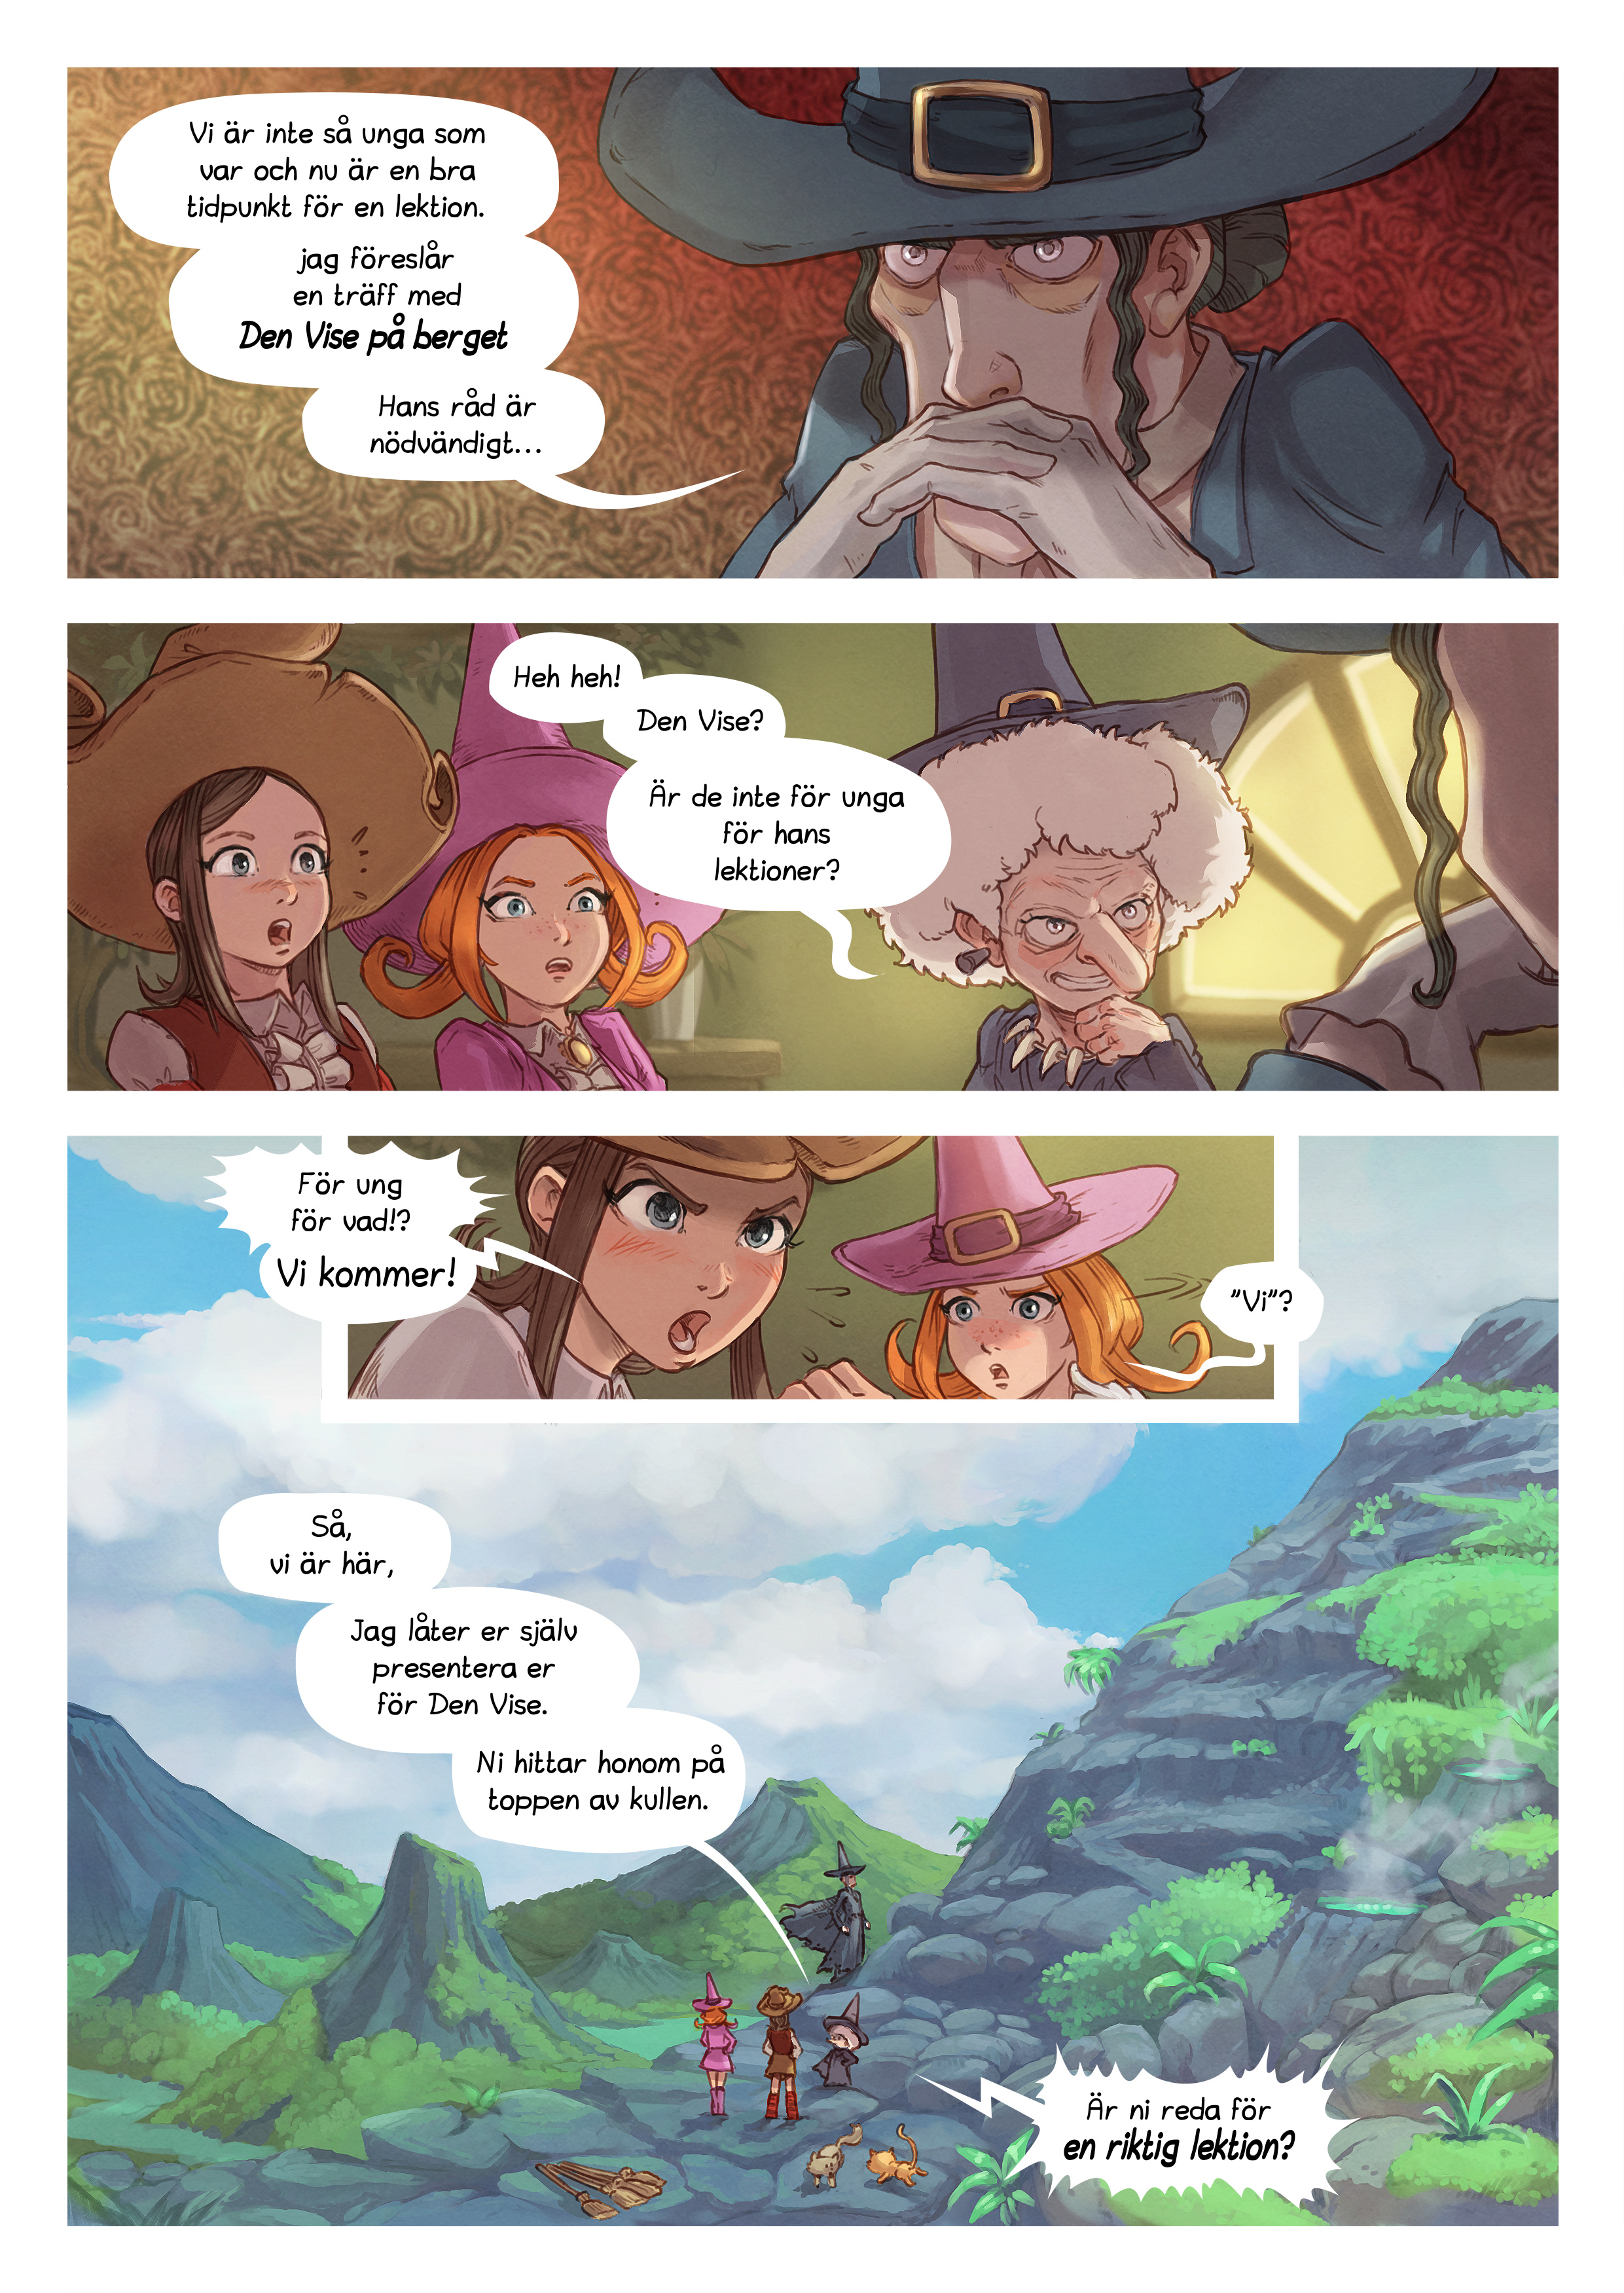 Episode 16: Den Vise på berget, Page 4